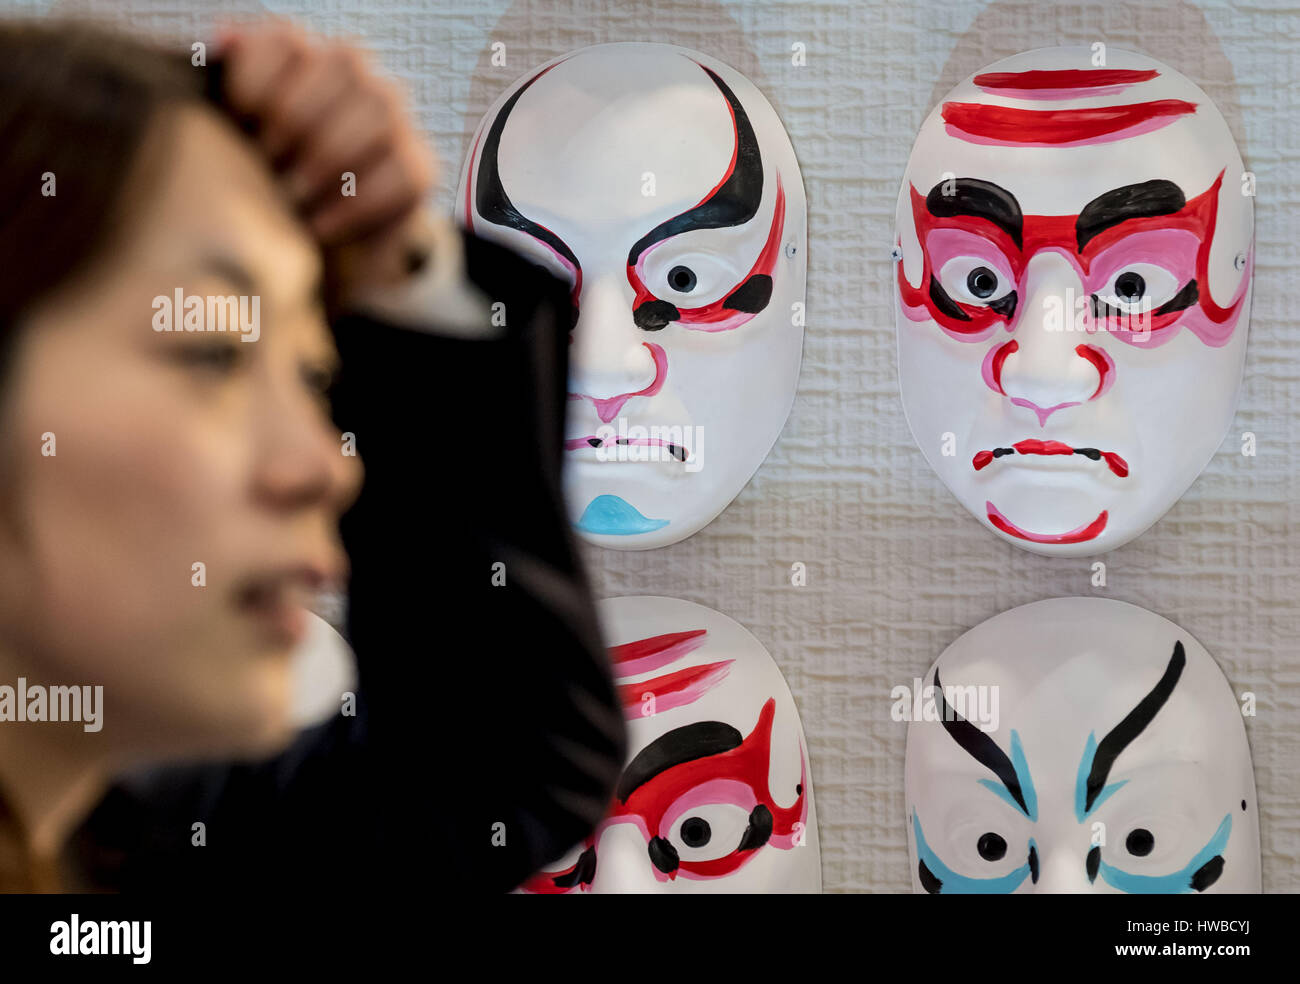 Hanovre, Allemagne. Mar 19, 2017. Masques japonais accroché au parc des expositions de la CeBIT à Hanovre, Allemagne, 19 mars 2017. Le Japon est le pays partenaire du CeBIT 2017. Photo : Peter Steffen/dpa/Alamy Live News Banque D'Images